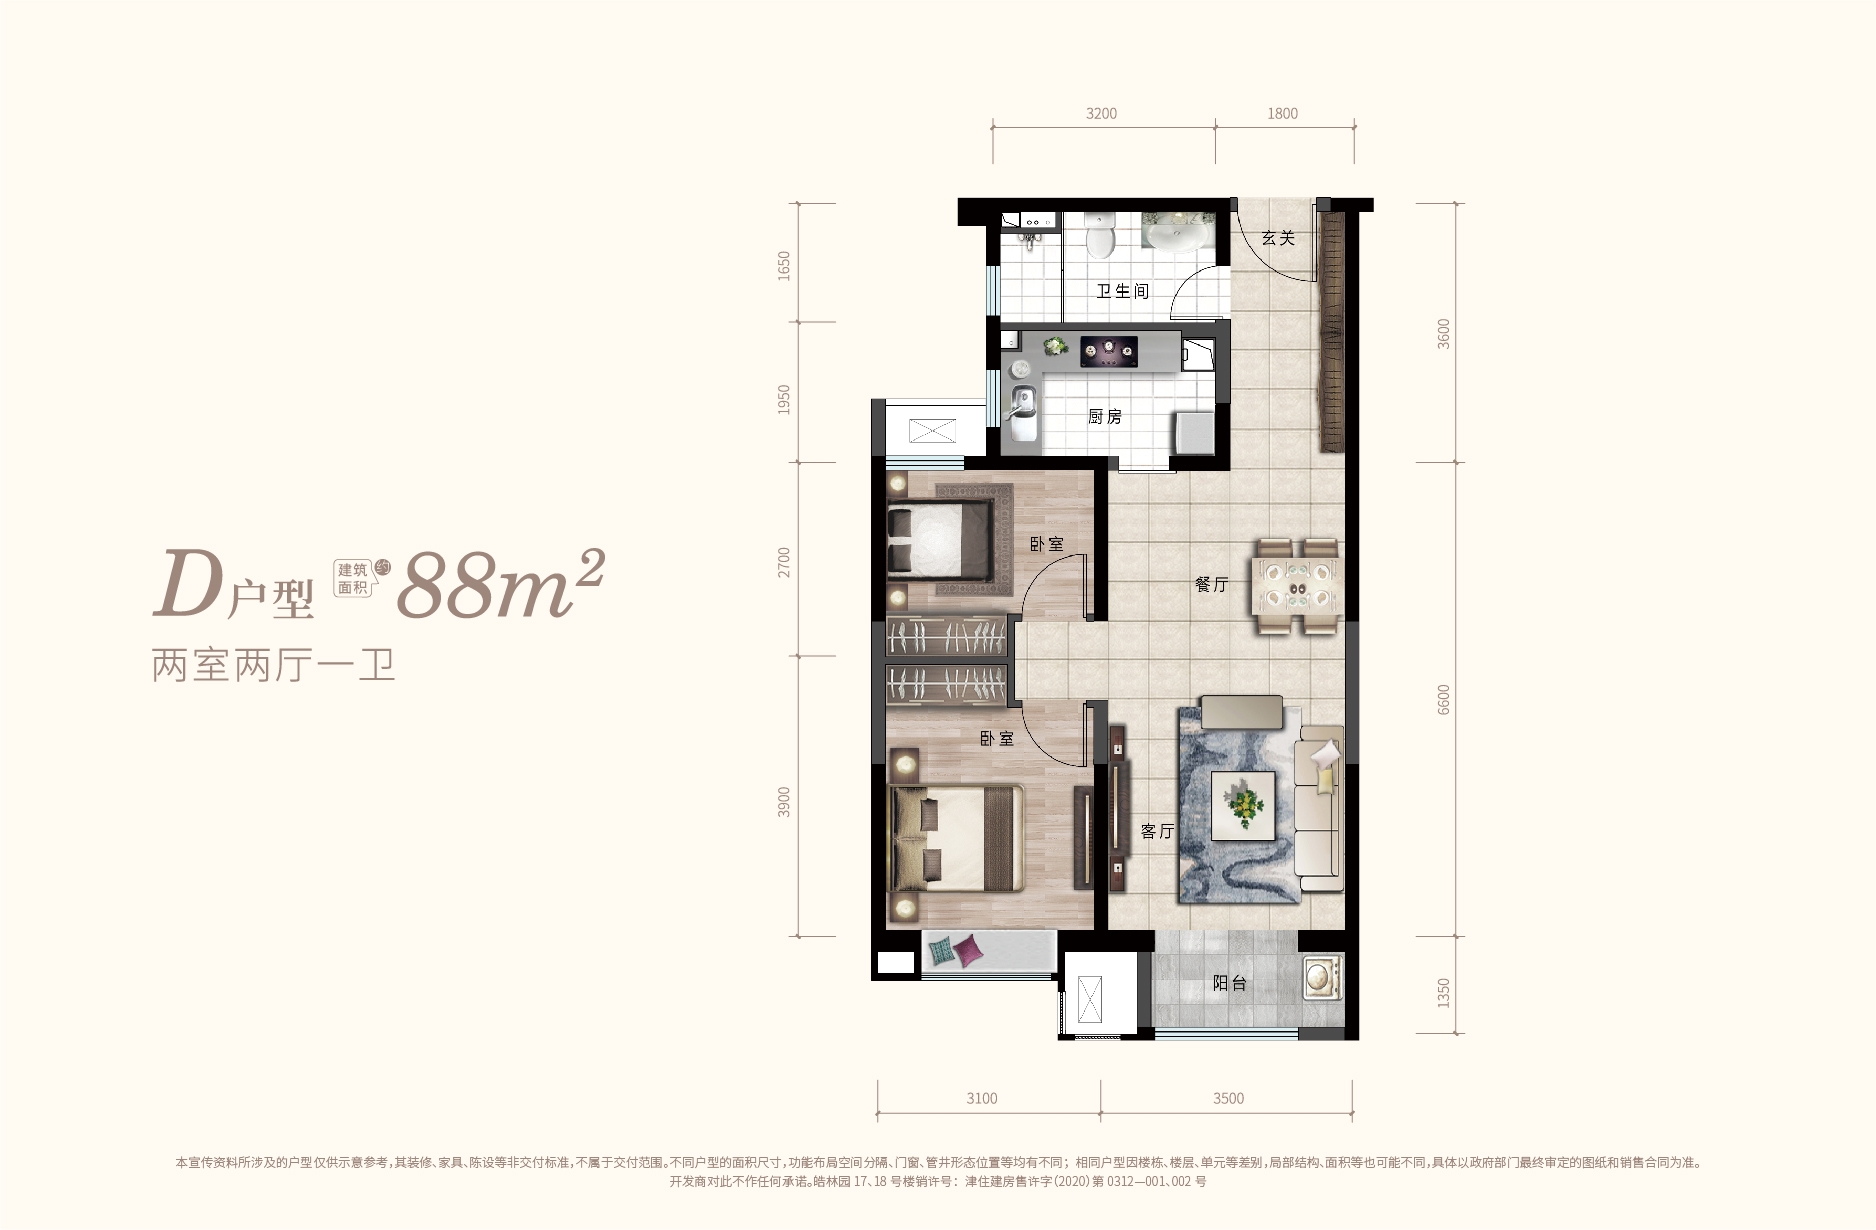 高层D户型 两室两厅一卫 88平米